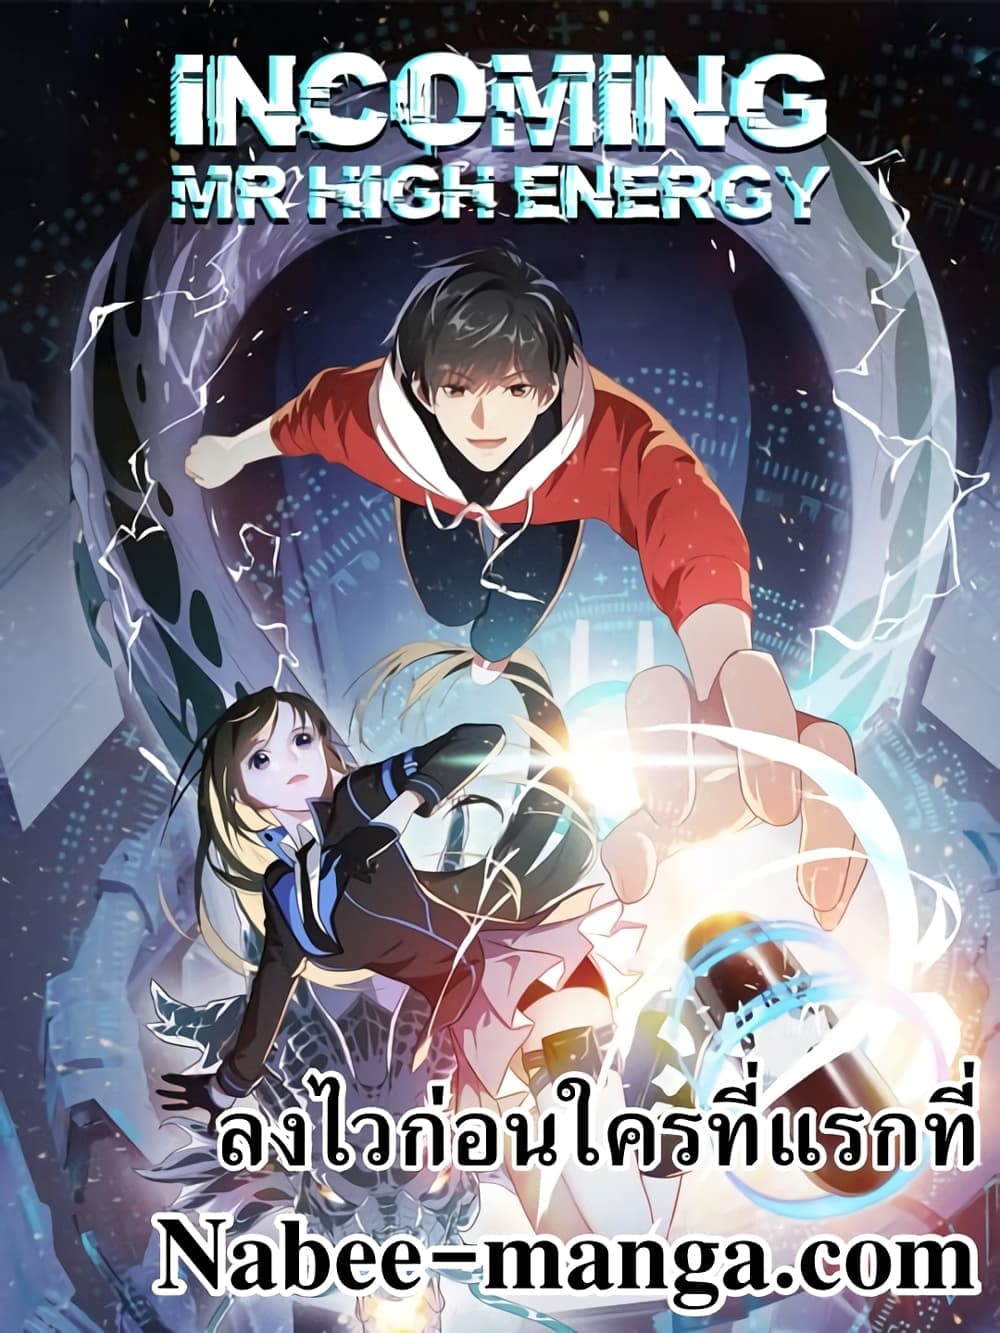 High Energy Strikes 303-303